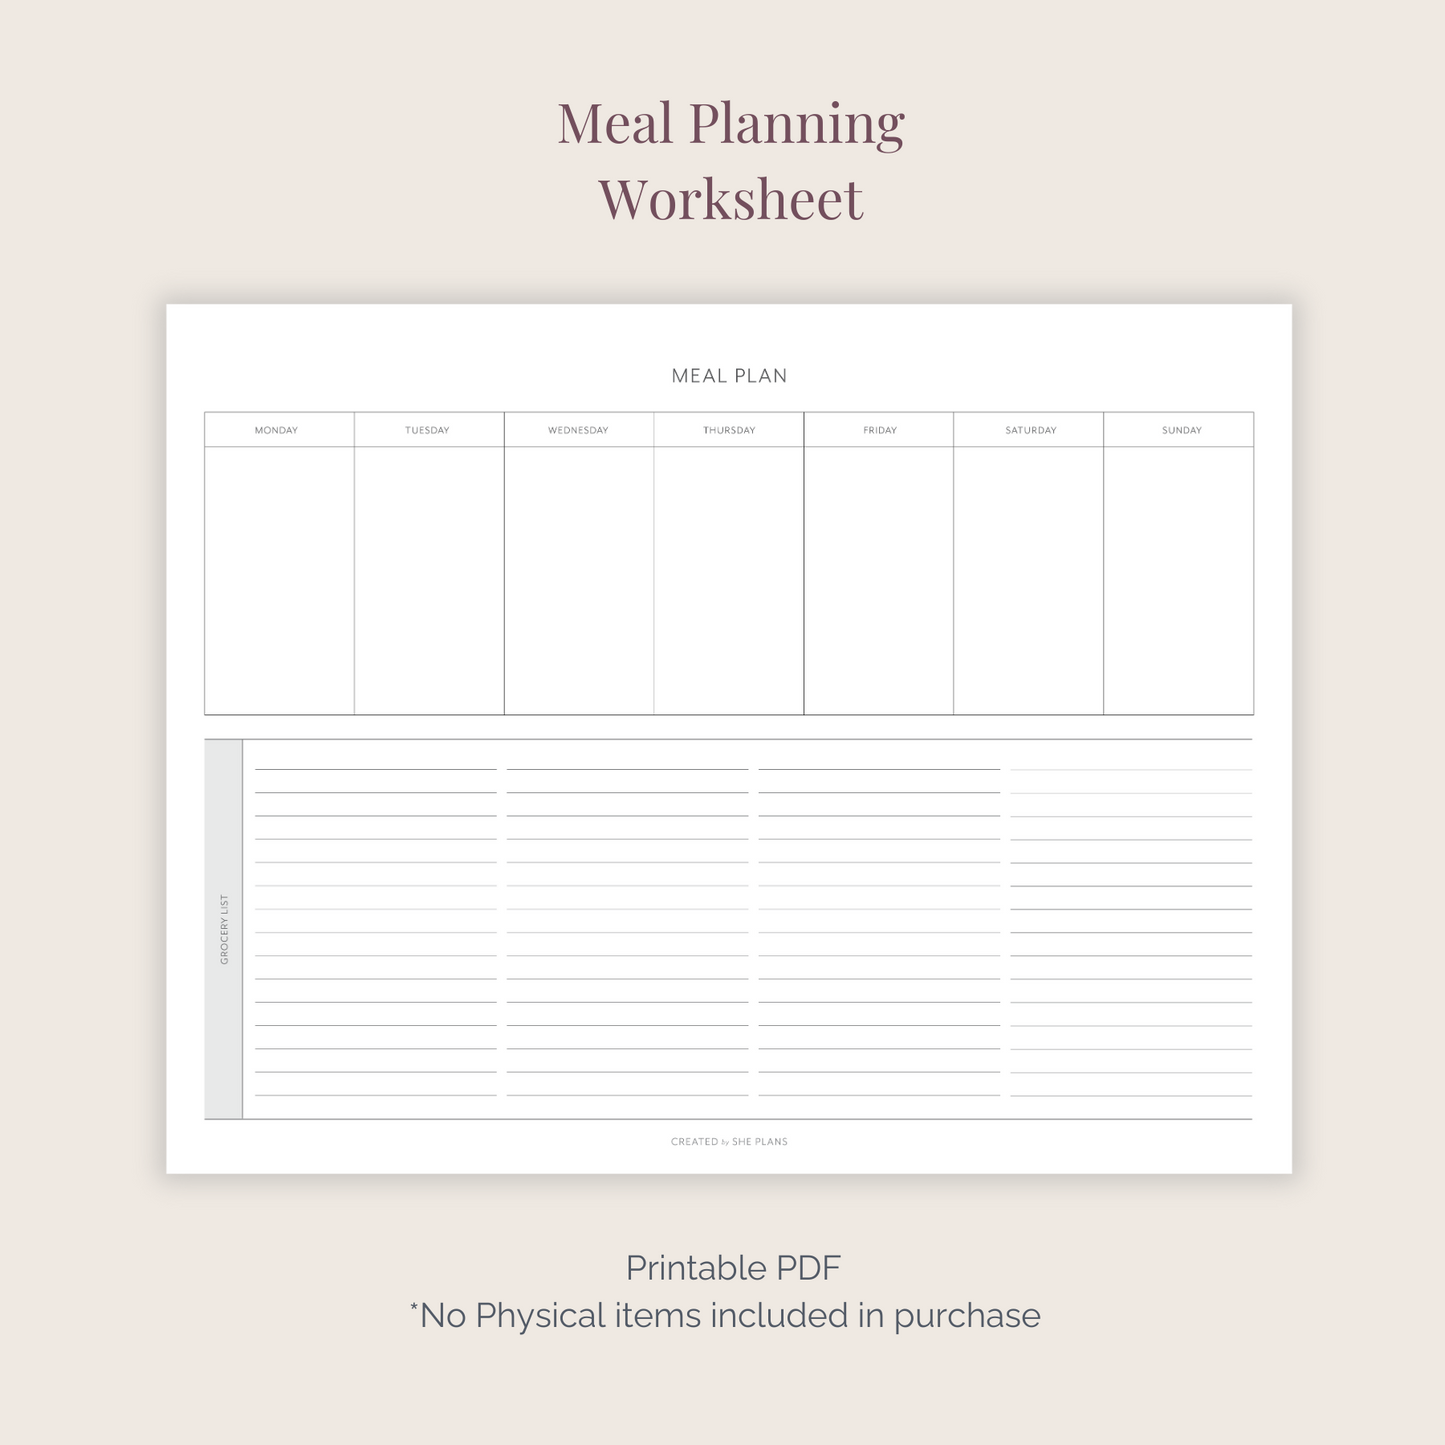 Meal Planning Worksheet PDF